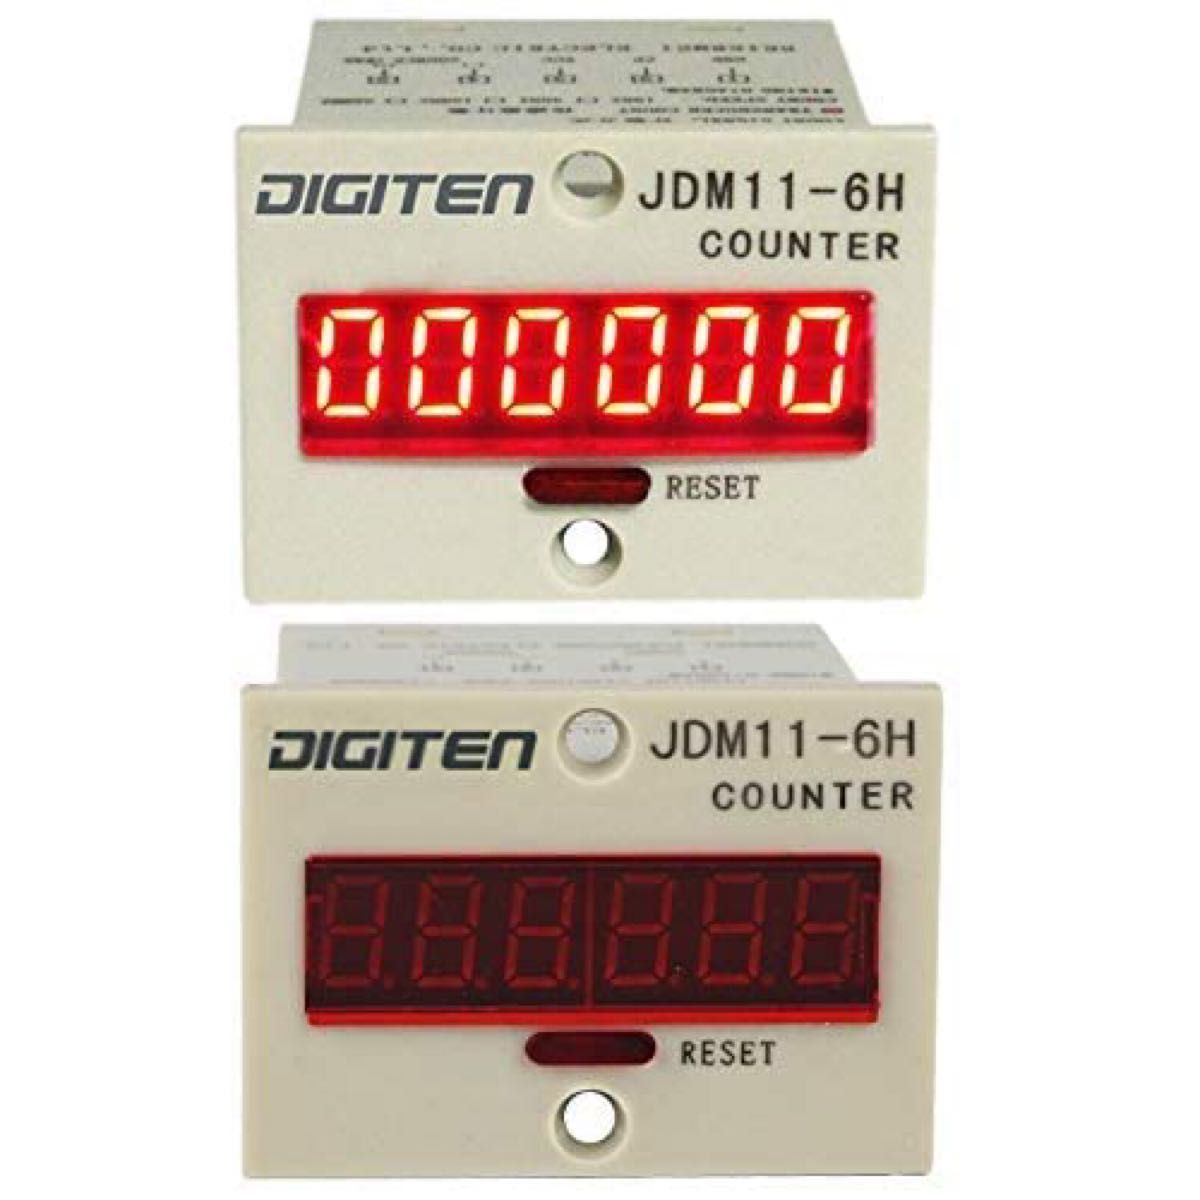 0-999999デジタルLEDカウンター+光電スイッチセンサー+リフレクター自動コンベヤーベルト100-240VAC